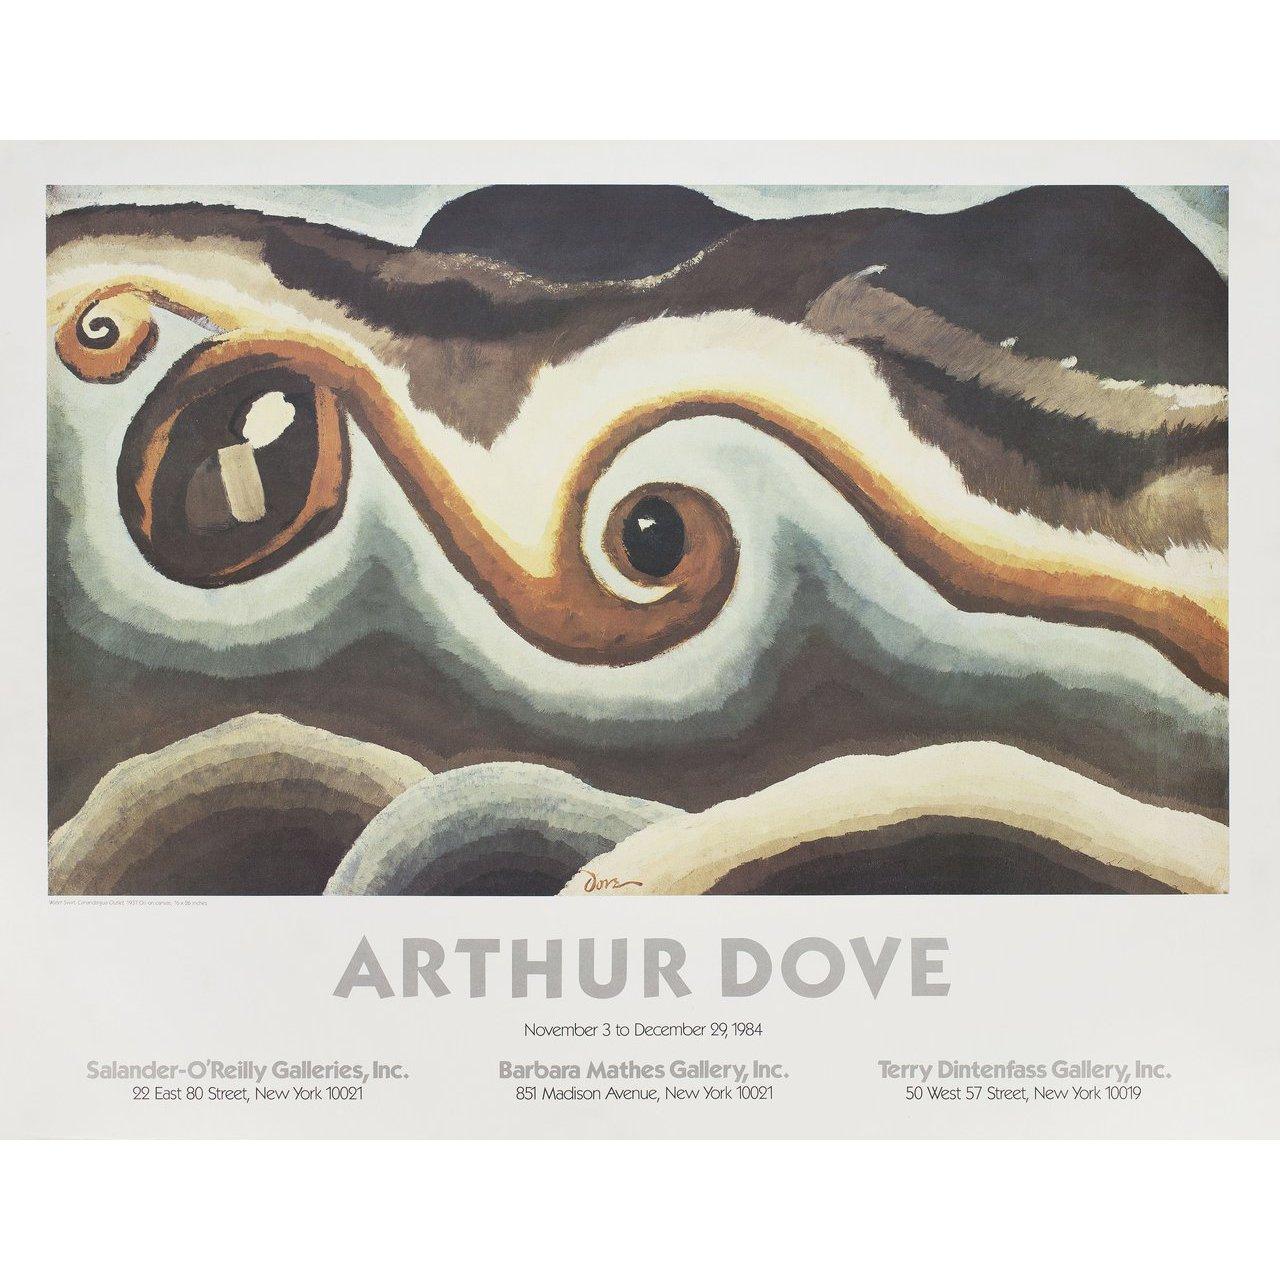 Originalplakat aus den USA von 1984 für die Ausstellung Arthur Dove. Sehr guter Zustand, gerollt. Bitte beachten Sie: Die Größe ist in Zoll angegeben und die tatsächliche Größe kann um einen Zoll oder mehr abweichen.
